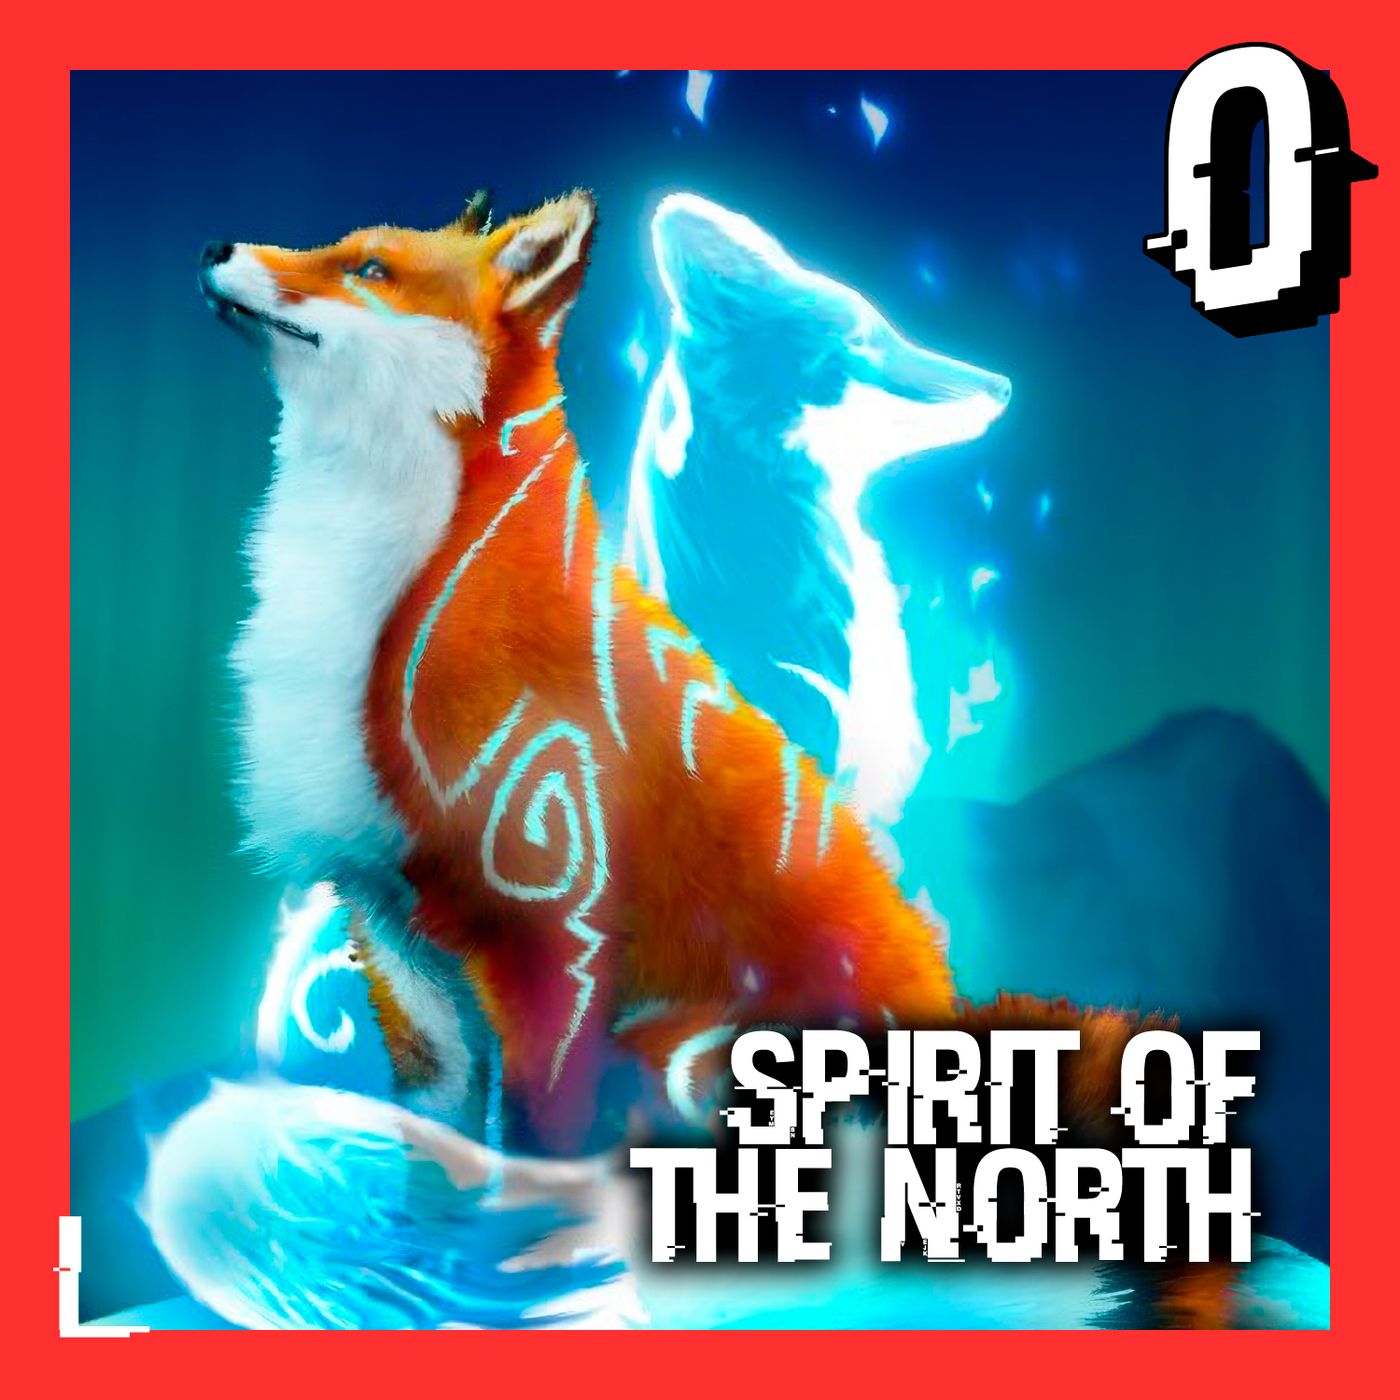 55- Spirit of the North: Vamos de A a B